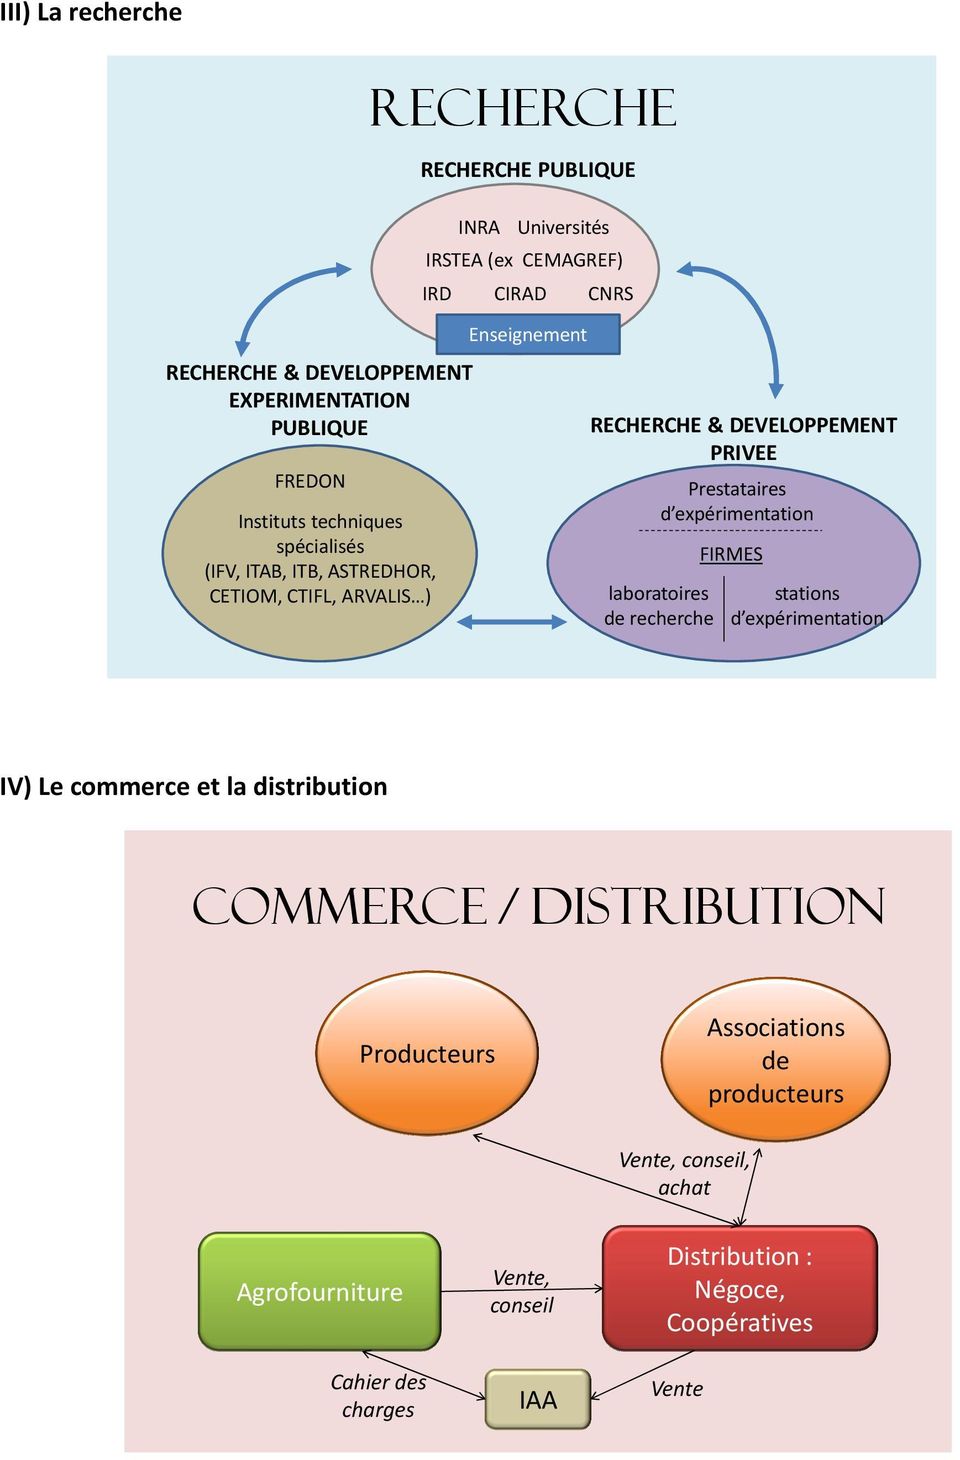 Prestataires d expérimentation laboratoires de recherche FIRMES stations d expérimentation IV) Le commerce et la distribution Commerce /